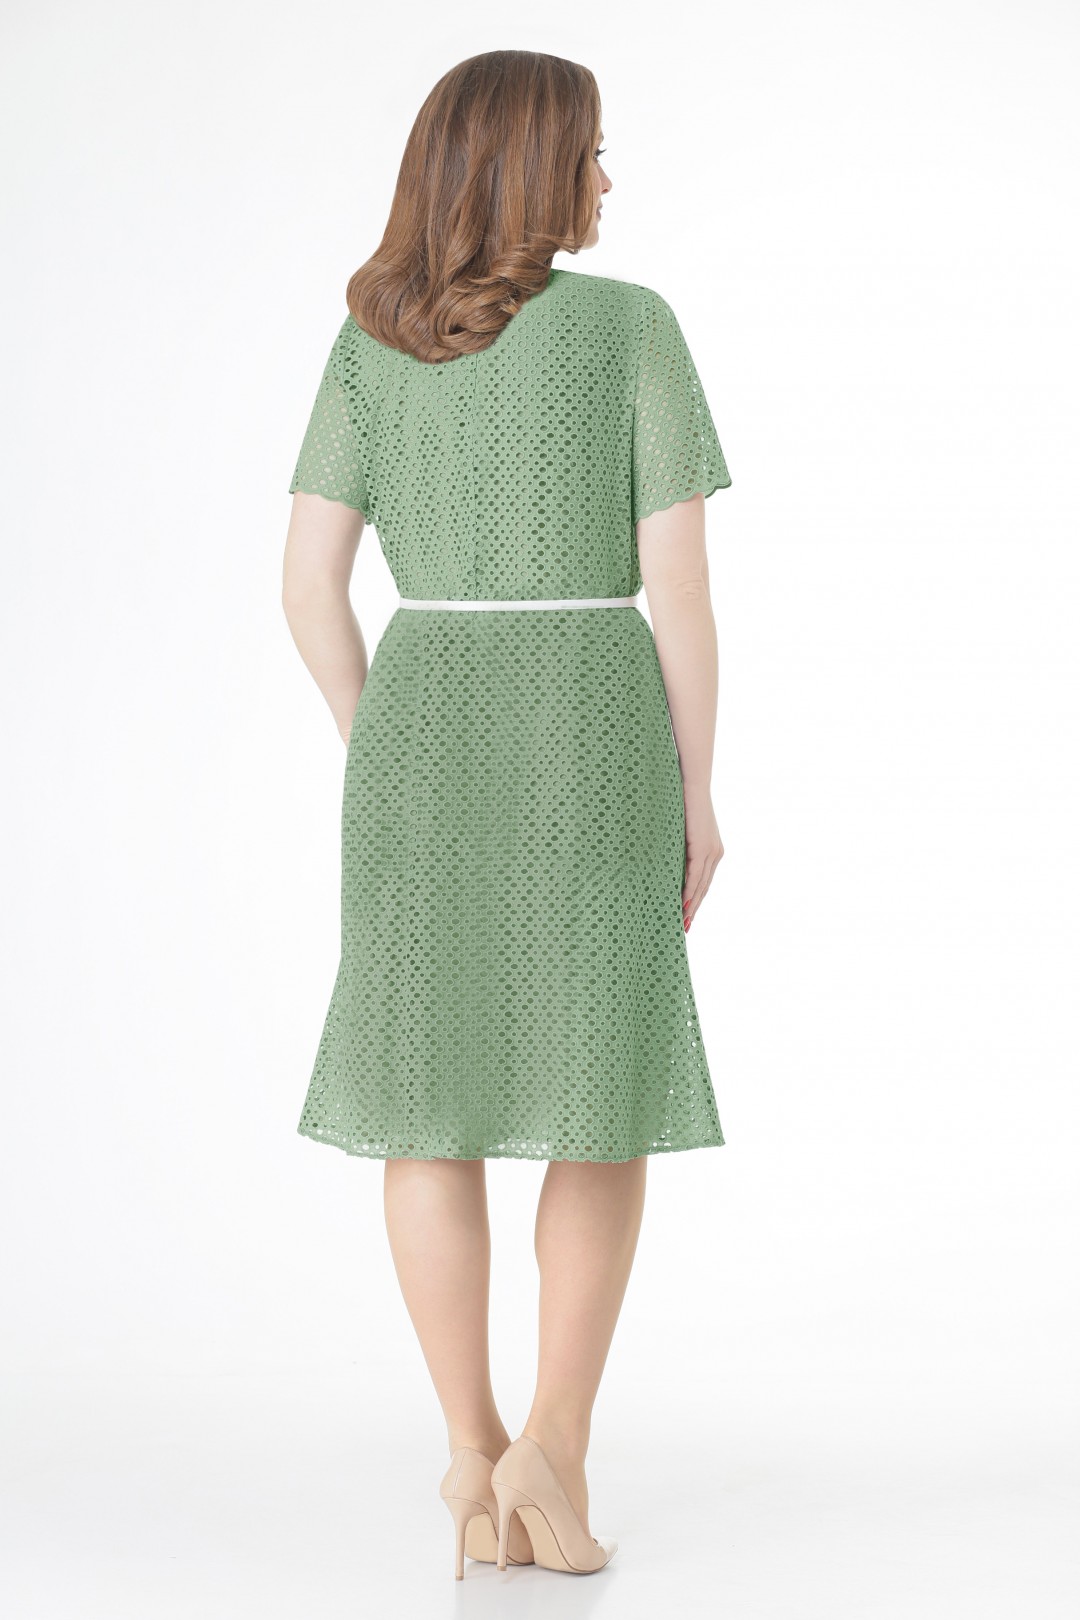 Платье VOLNA 1194 яблочно-зеленый